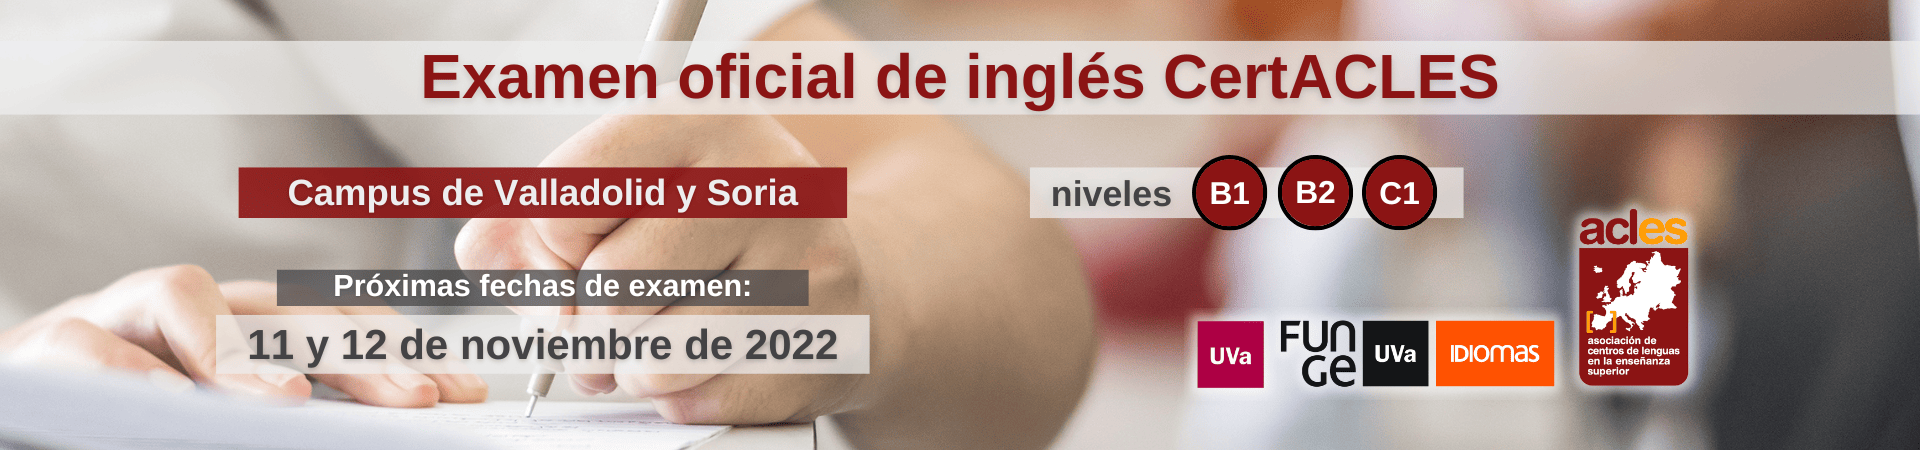 Banner examen ingles CertACLES noviembre 2022 Universidad de Valladolid